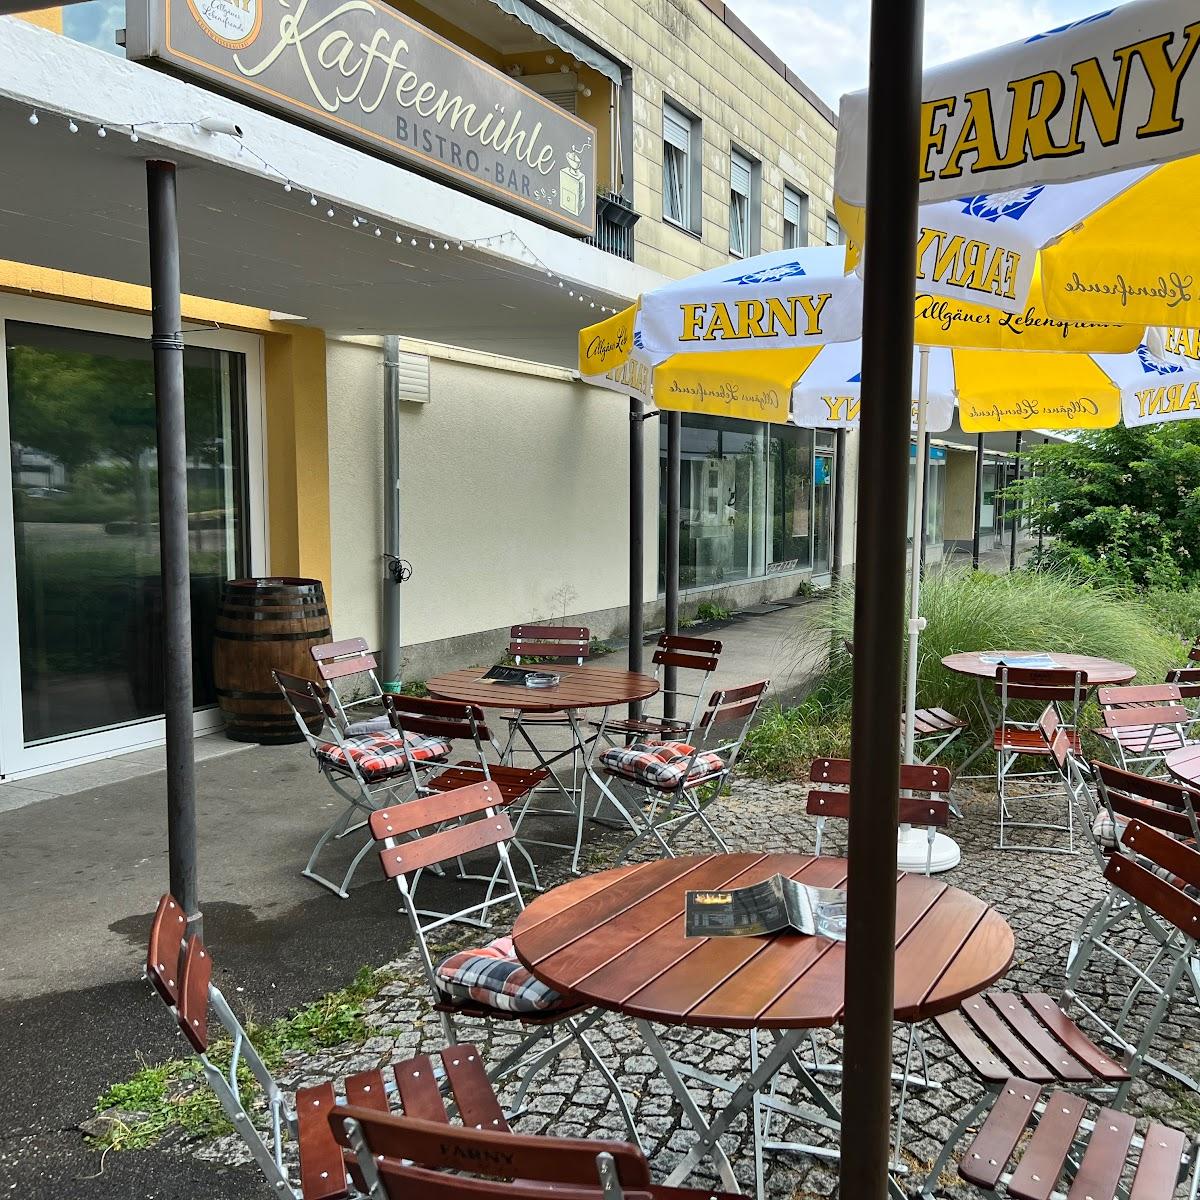 Restaurant "Kaffeemühle Bar" in Weingarten